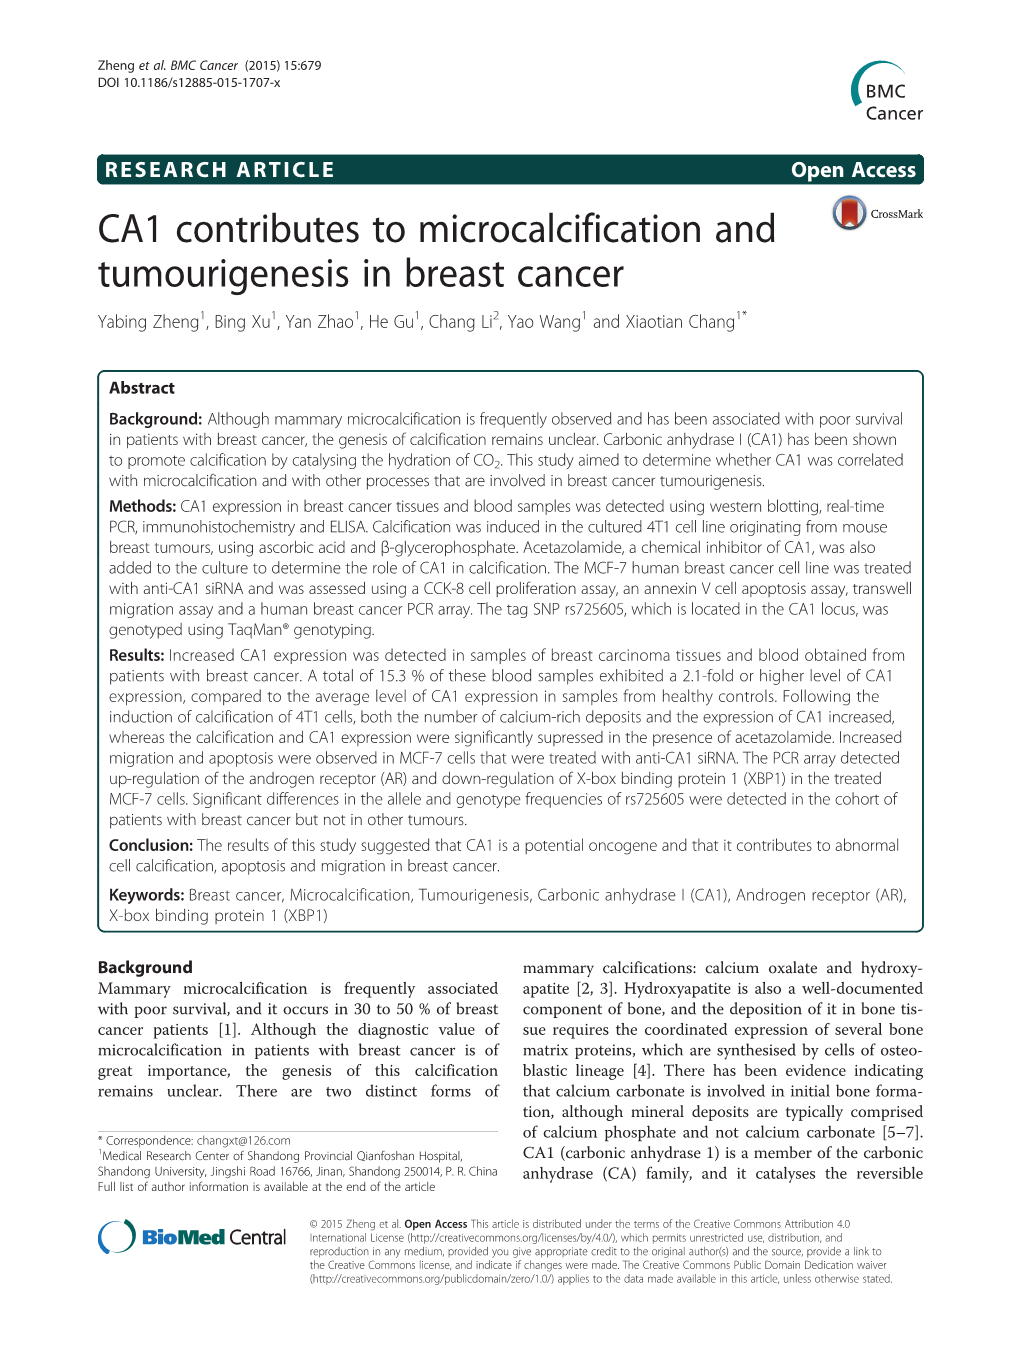 CA1 Contributes to Microcalcification and Tumourigenesis in Breast Cancer Yabing Zheng1, Bing Xu1, Yan Zhao1,Hegu1, Chang Li2, Yao Wang1 and Xiaotian Chang1*